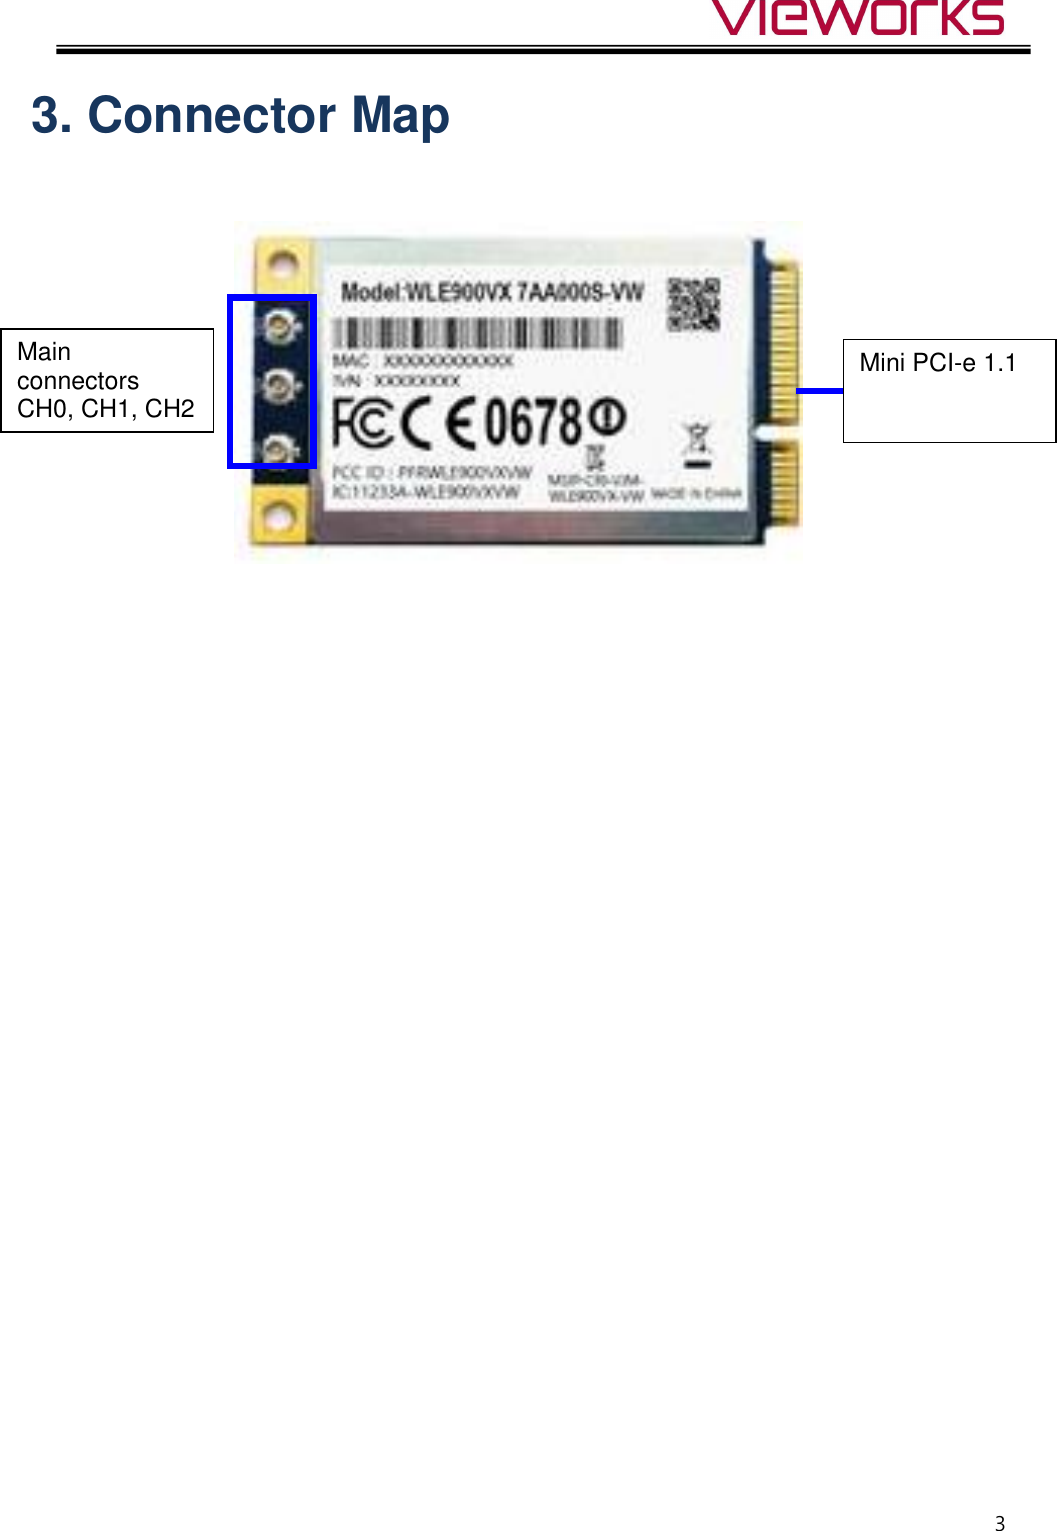  3 3. Connector Map      Main connectors   CH0, CH1, CH2  Mini PCI-e 1.1  